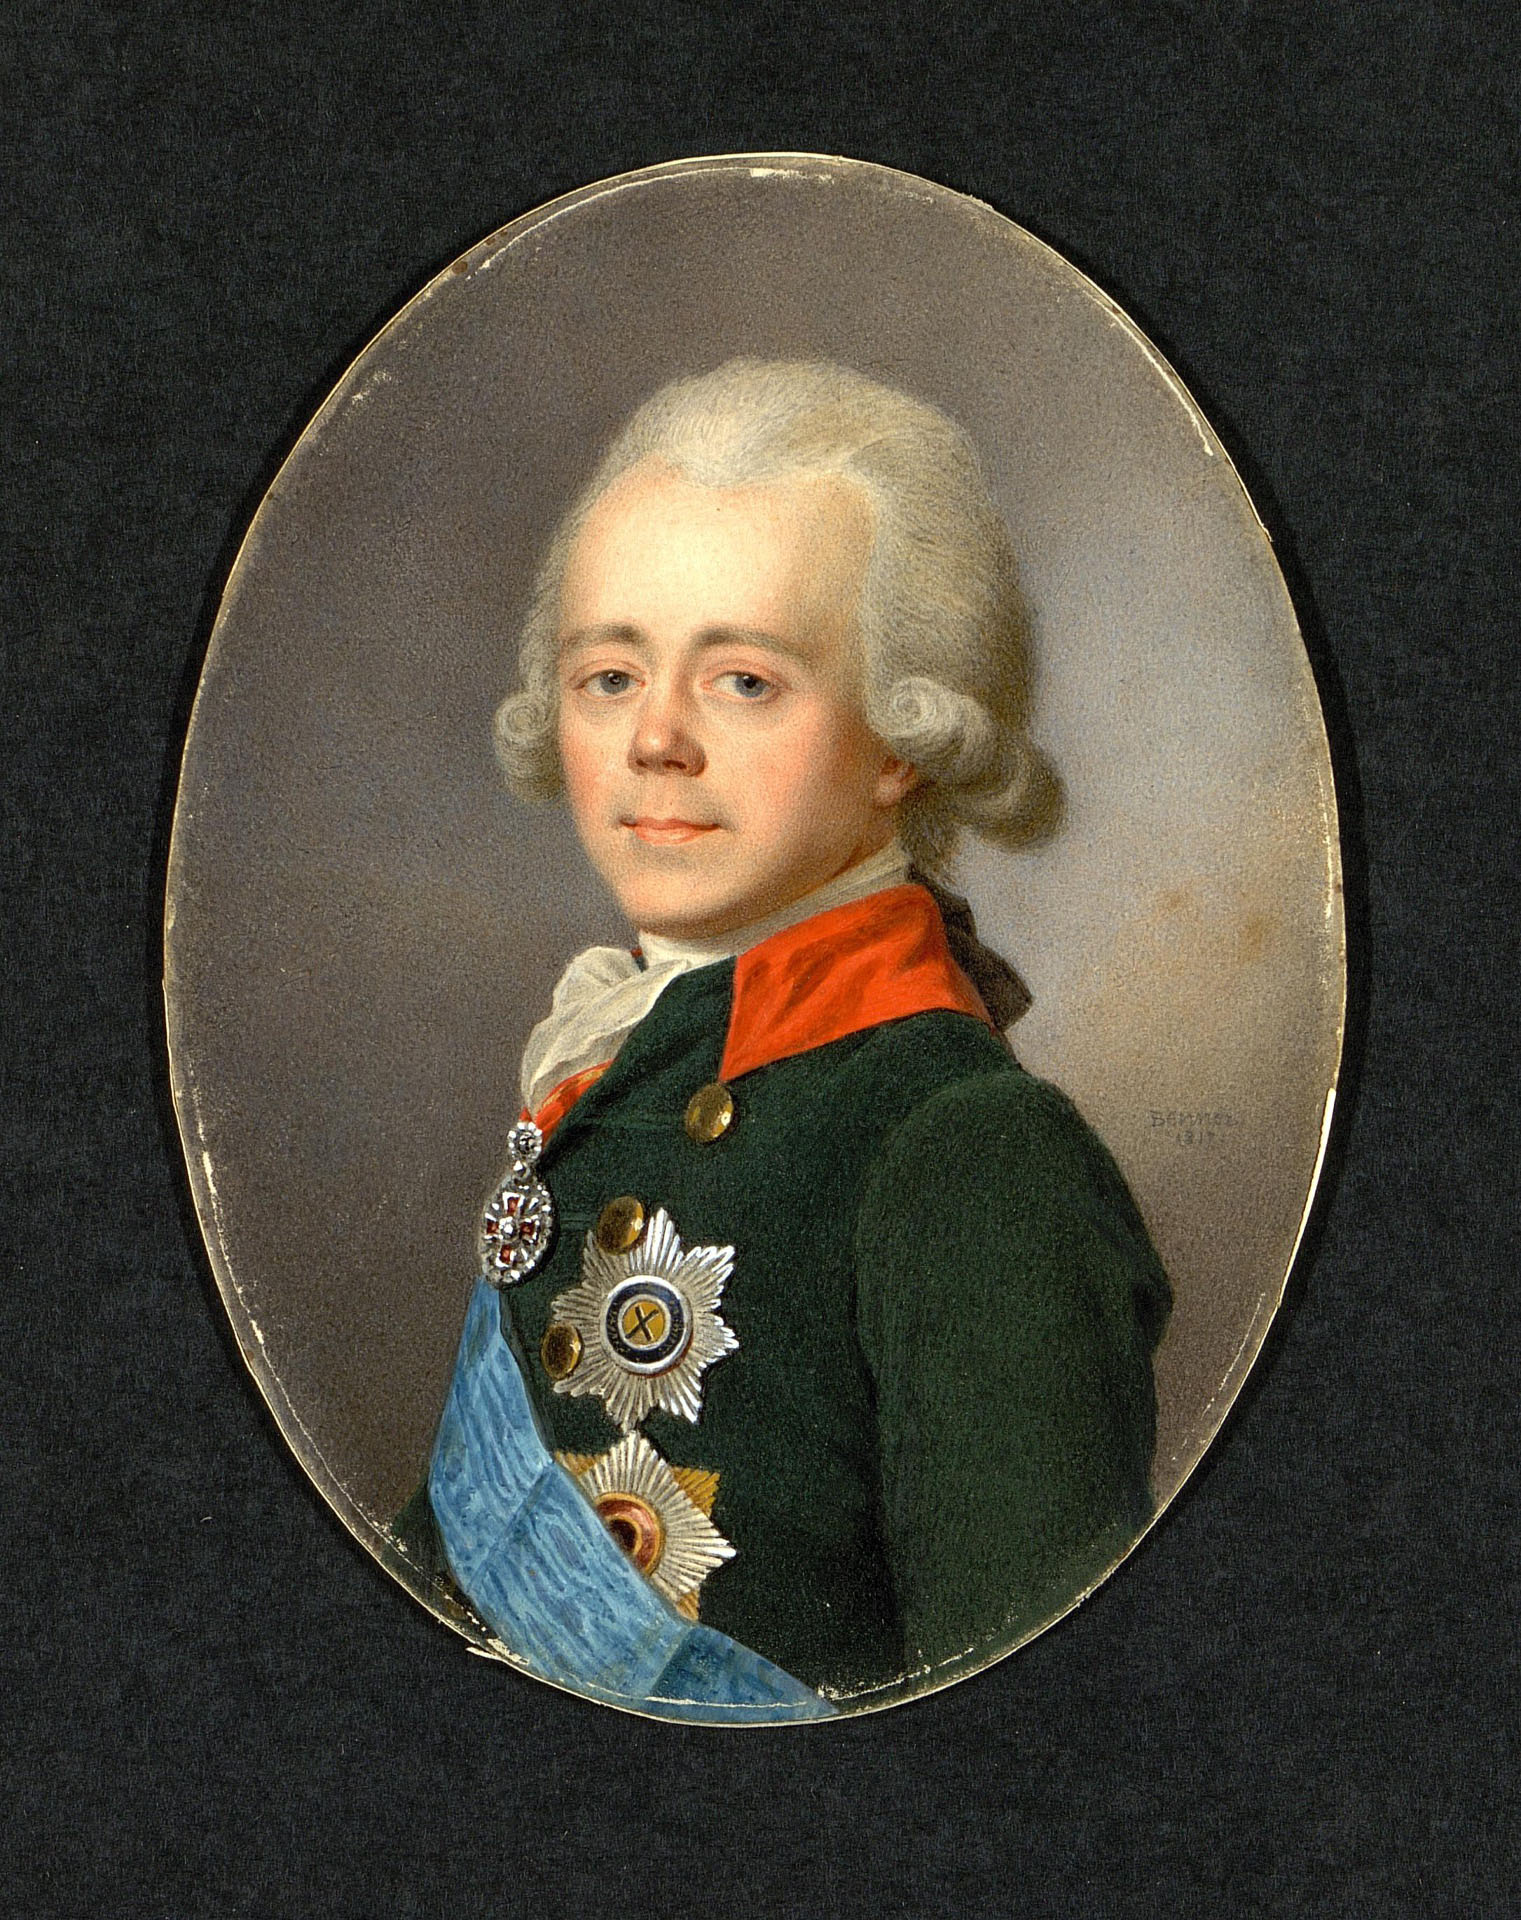 Жан-Анри Беннер. "Портрет императора Павла I". 1817. Эрмитаж, Санкт-Петербург.